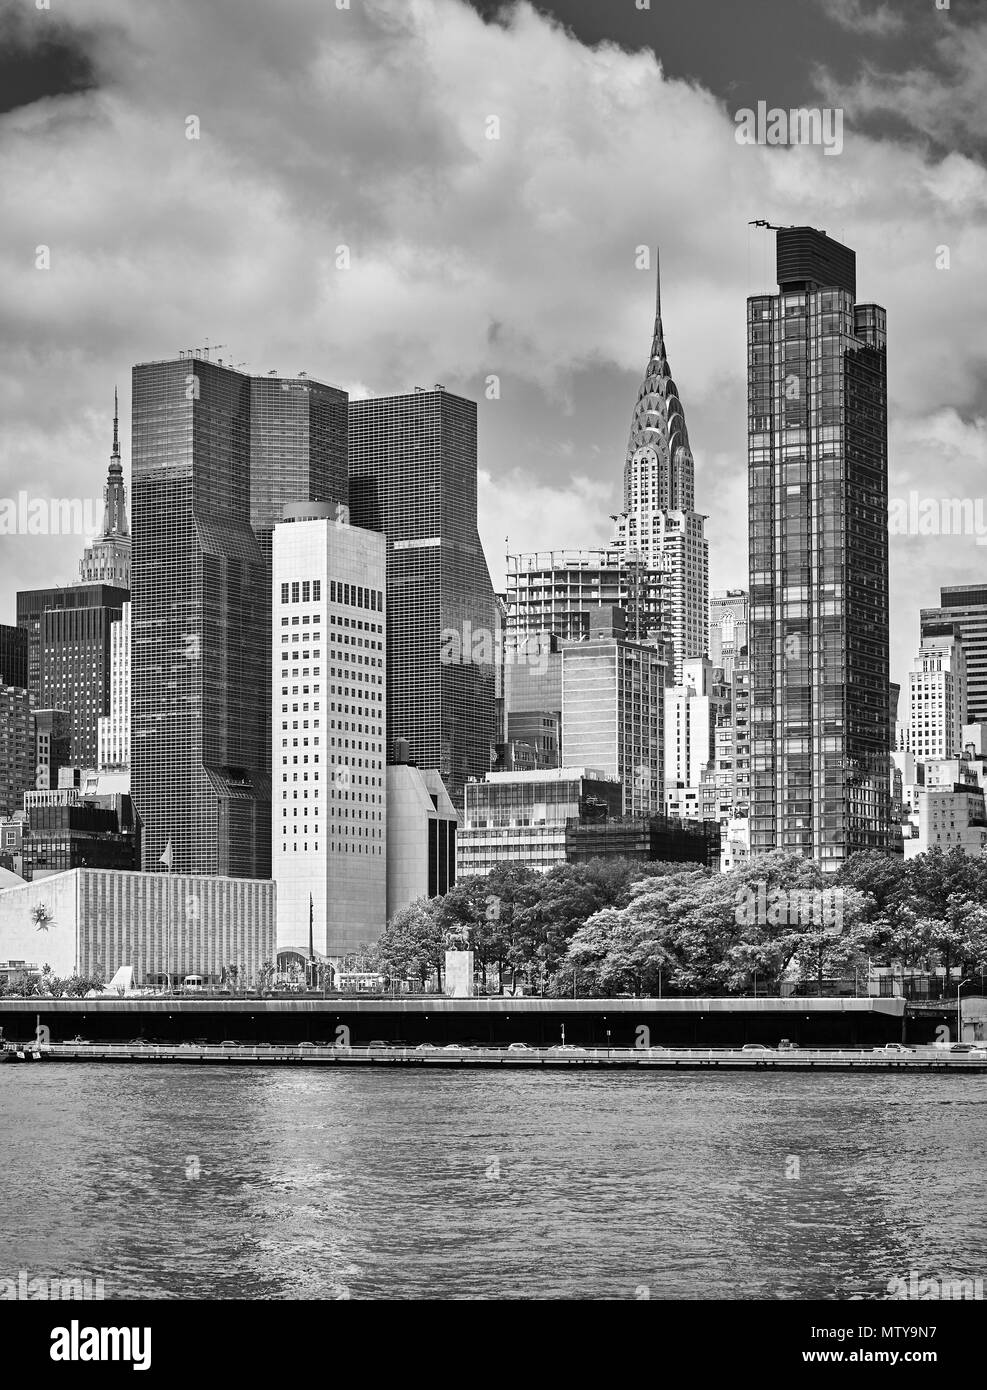 La Ciudad de Nueva York, vista desde el Roosevelt Island, EE.UU. Foto de stock